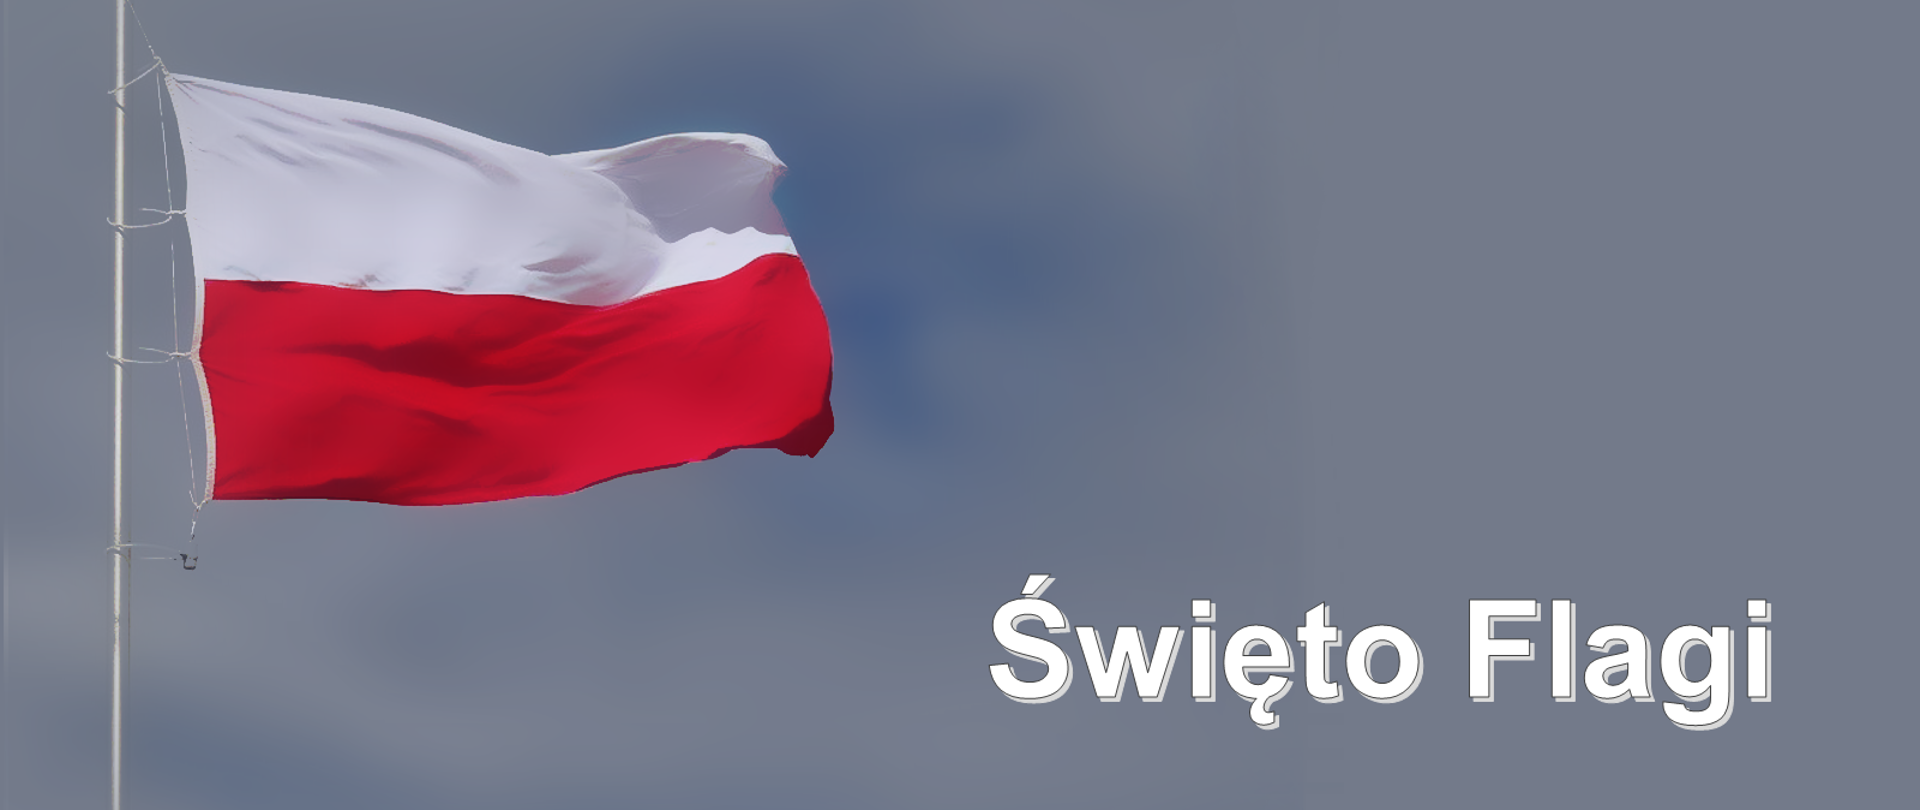 Flaga Polski na tle nieba. W prawym dolnym rogu napis "Święto Flagi"